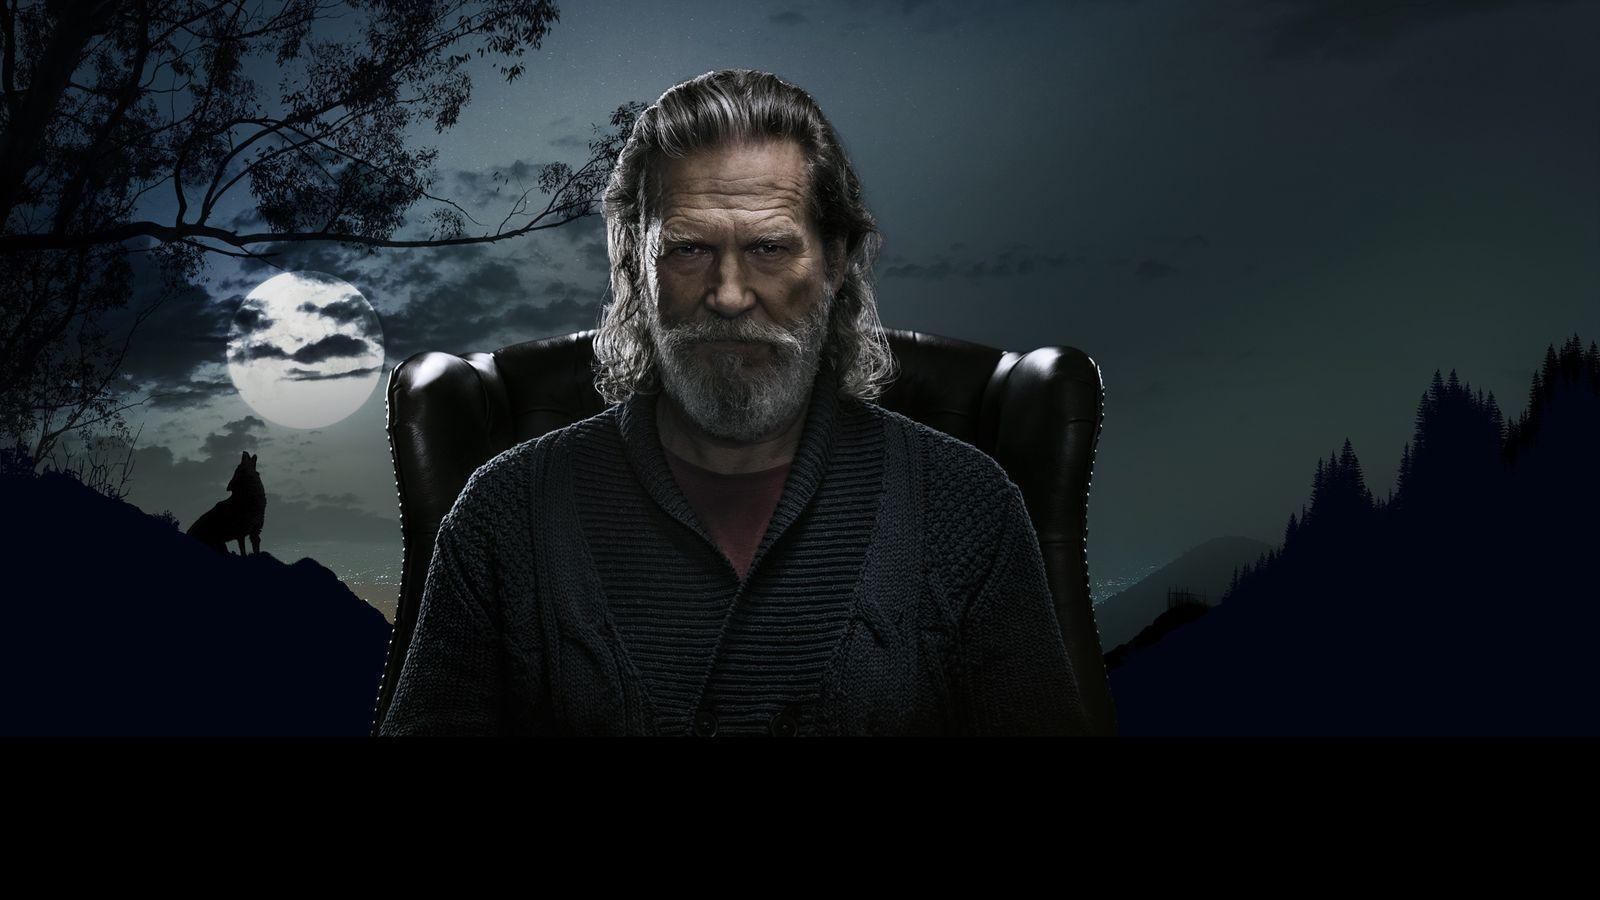 Jeff Bridges Desktop Wallpaper